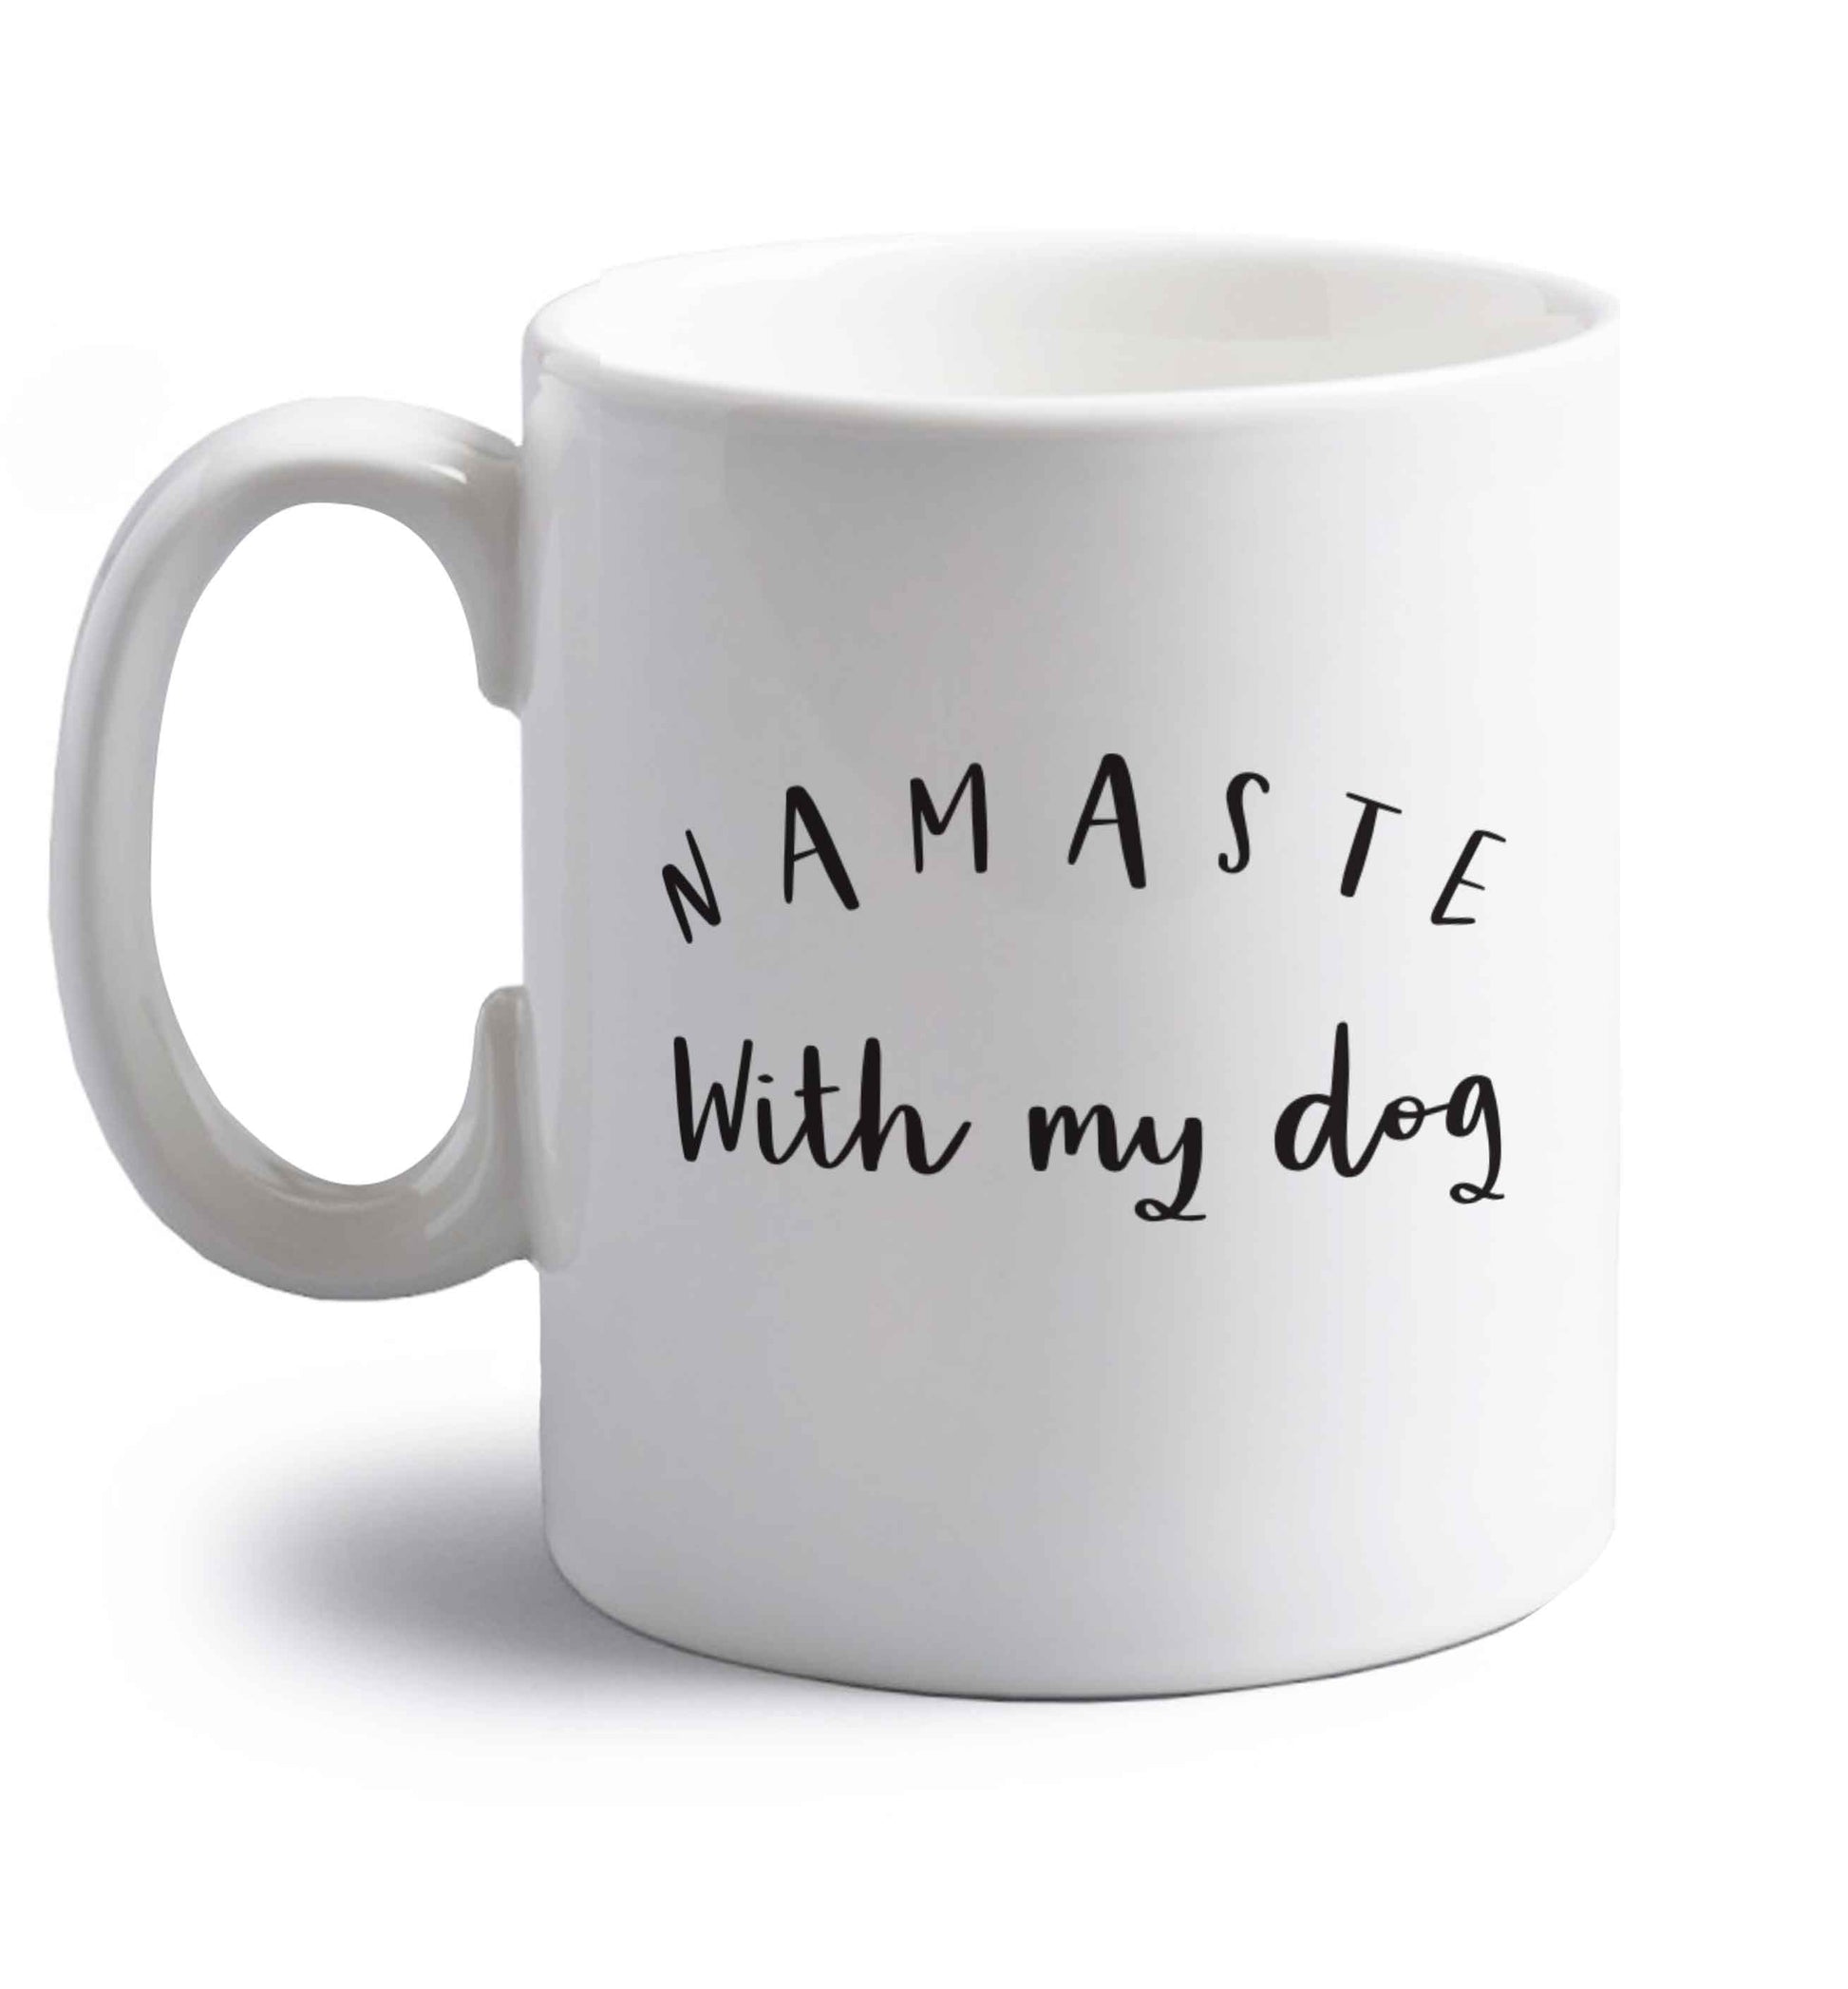 Namaste with my dog right handed white ceramic mug 